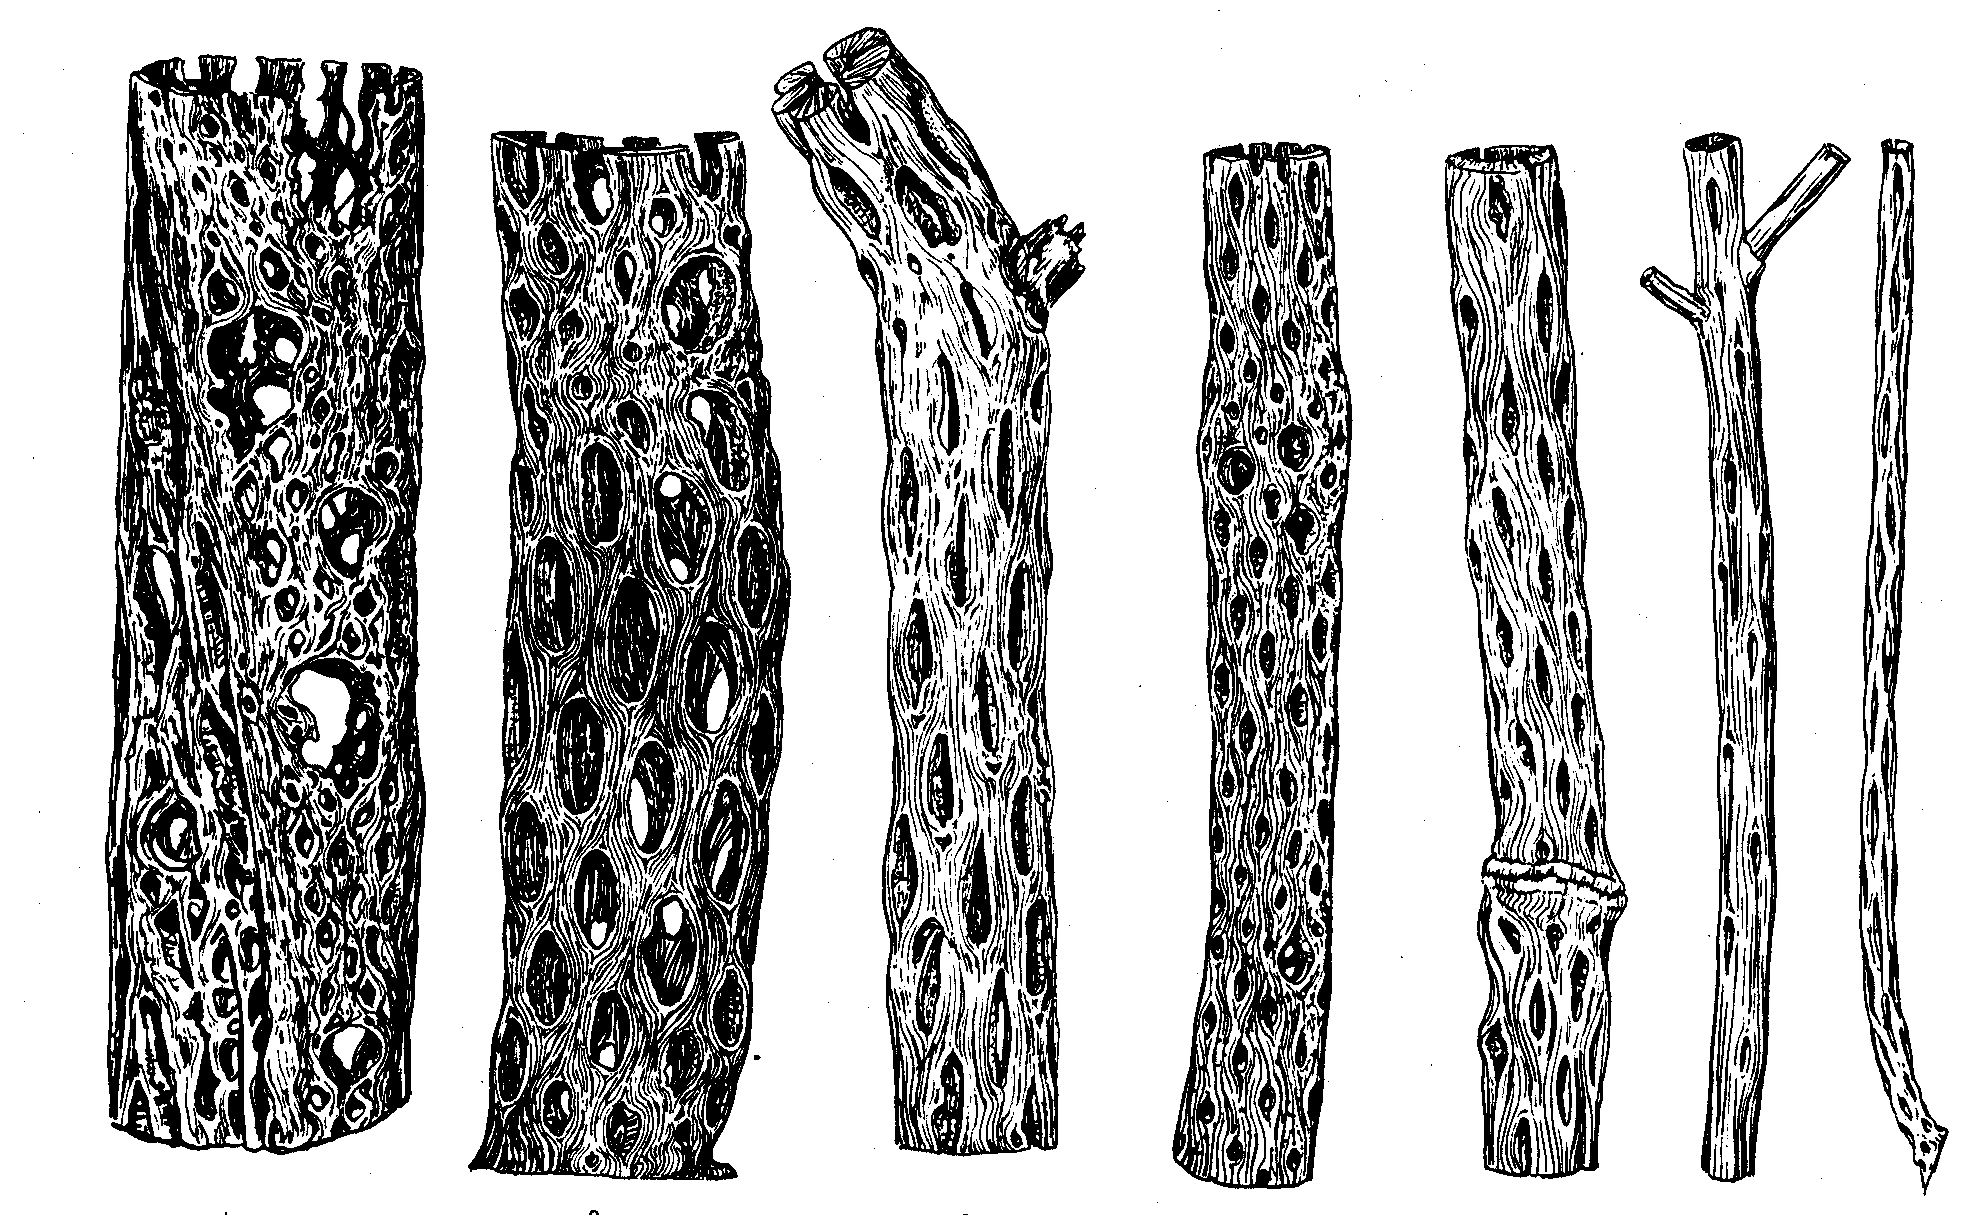 c) 2 aréolas espinosas, cada una de ellas con espinas (parte de la izquierda) y gloquidios (parte de la derecha).